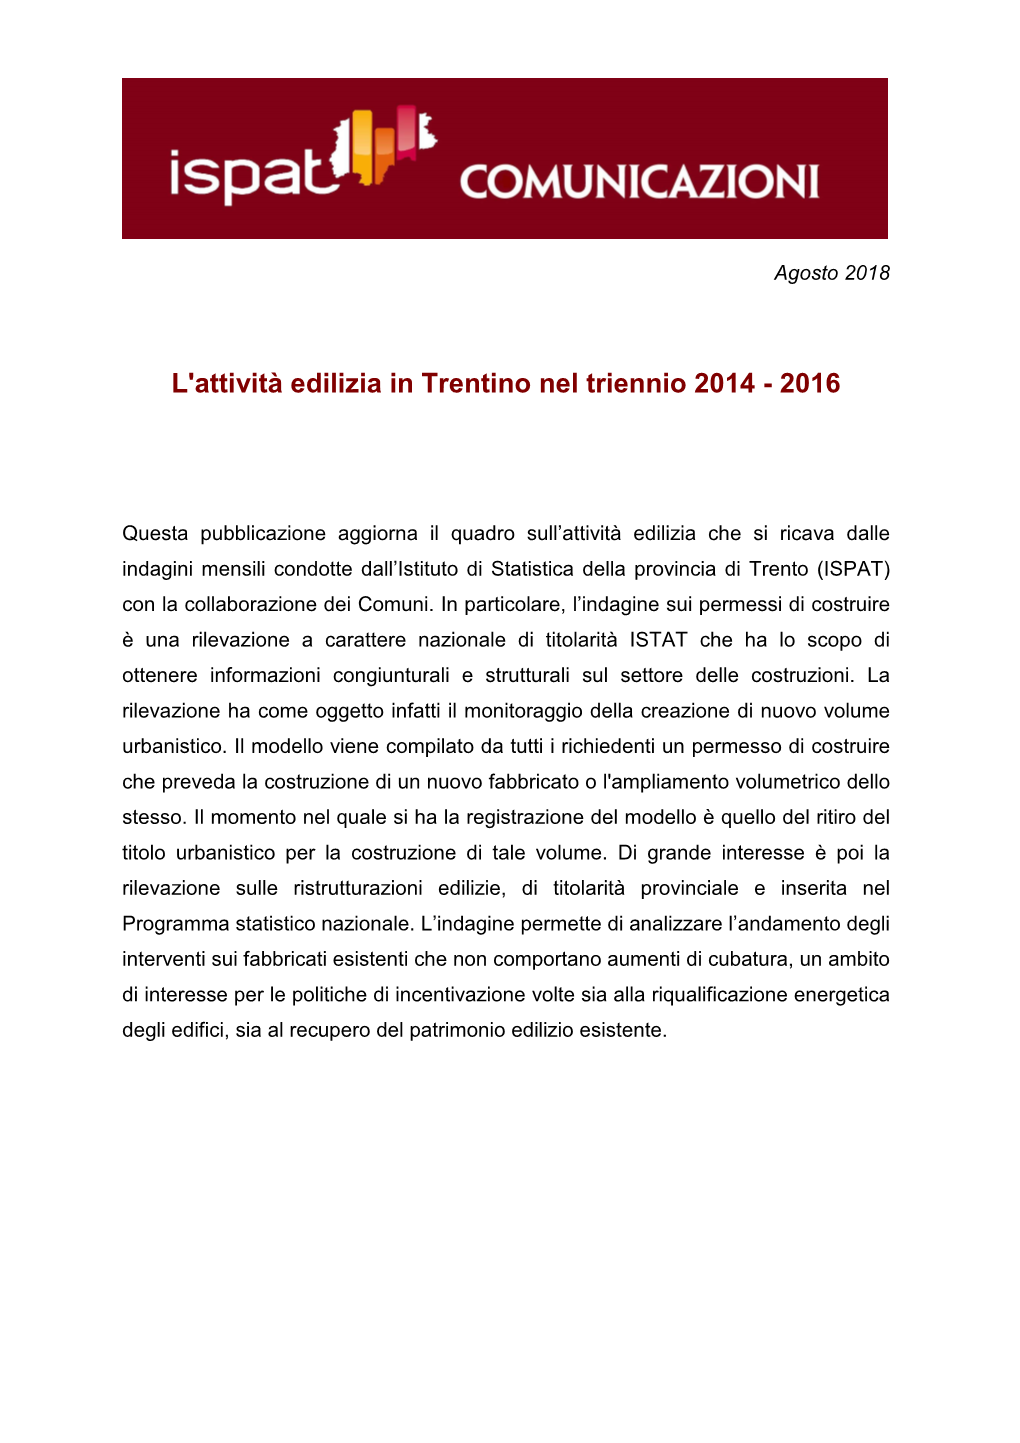 L'attività Edilizia in Trentino Nel Triennio 2014 - 2016